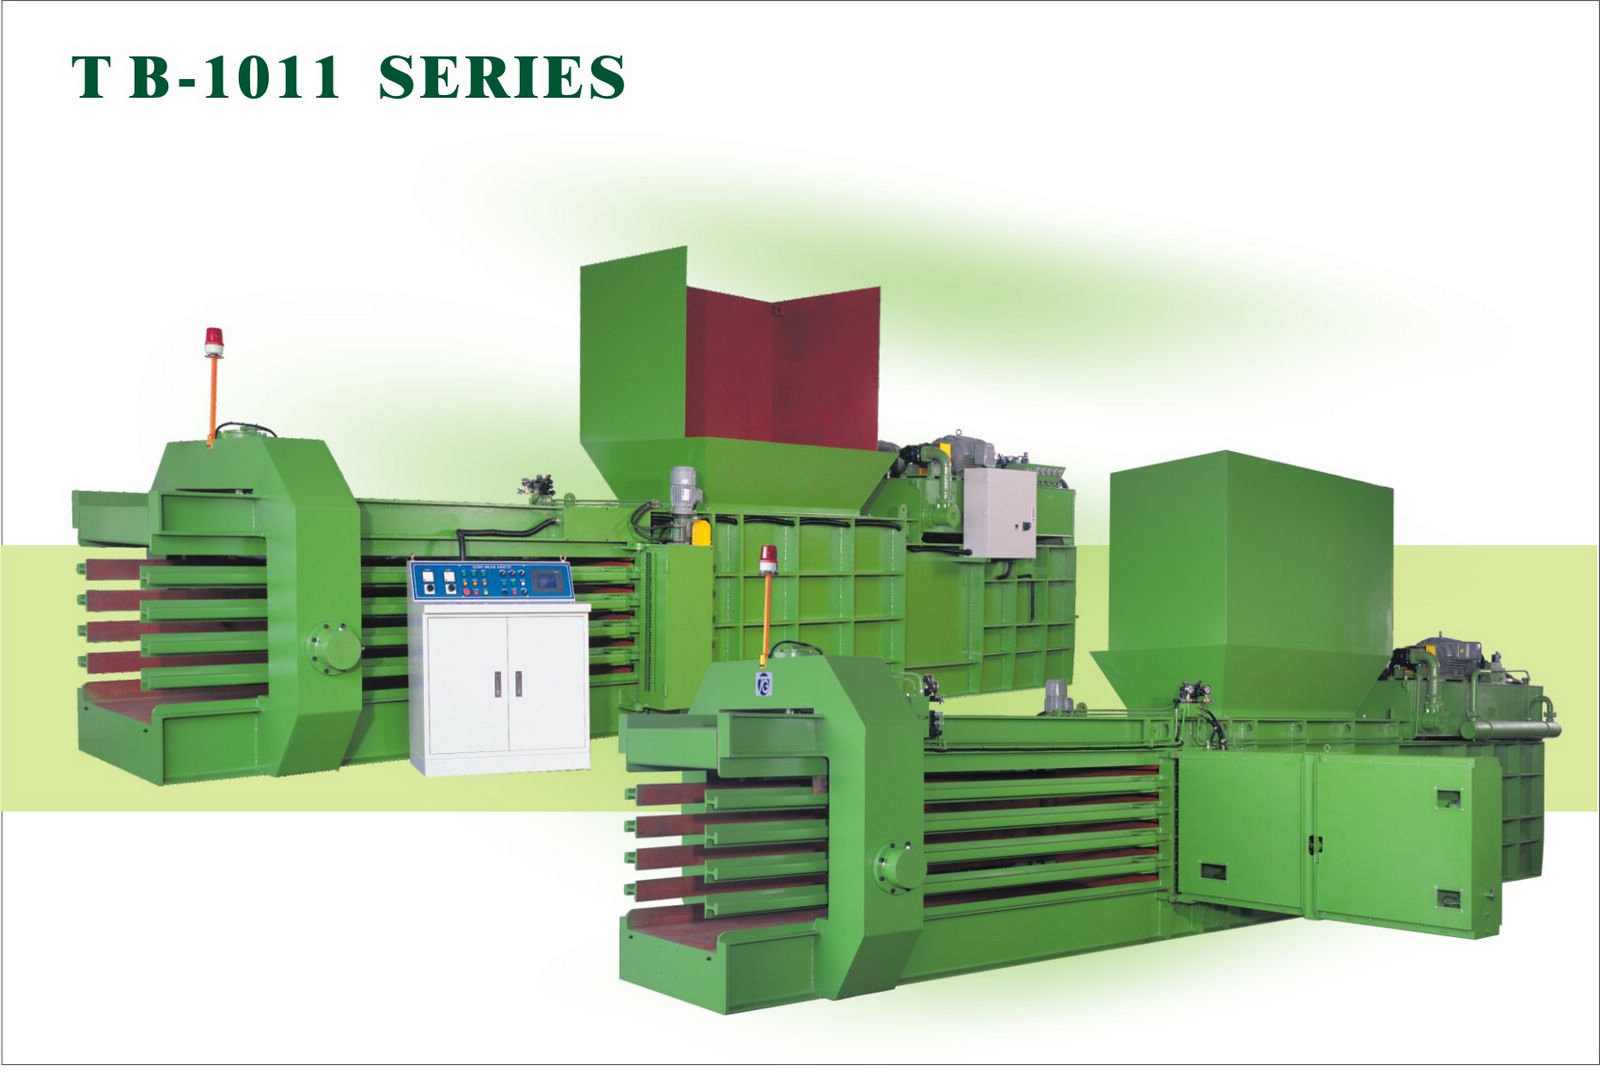 स्वचालित क्षैतिज बेलिंग प्रेस मशीन - टीबी 1011H0